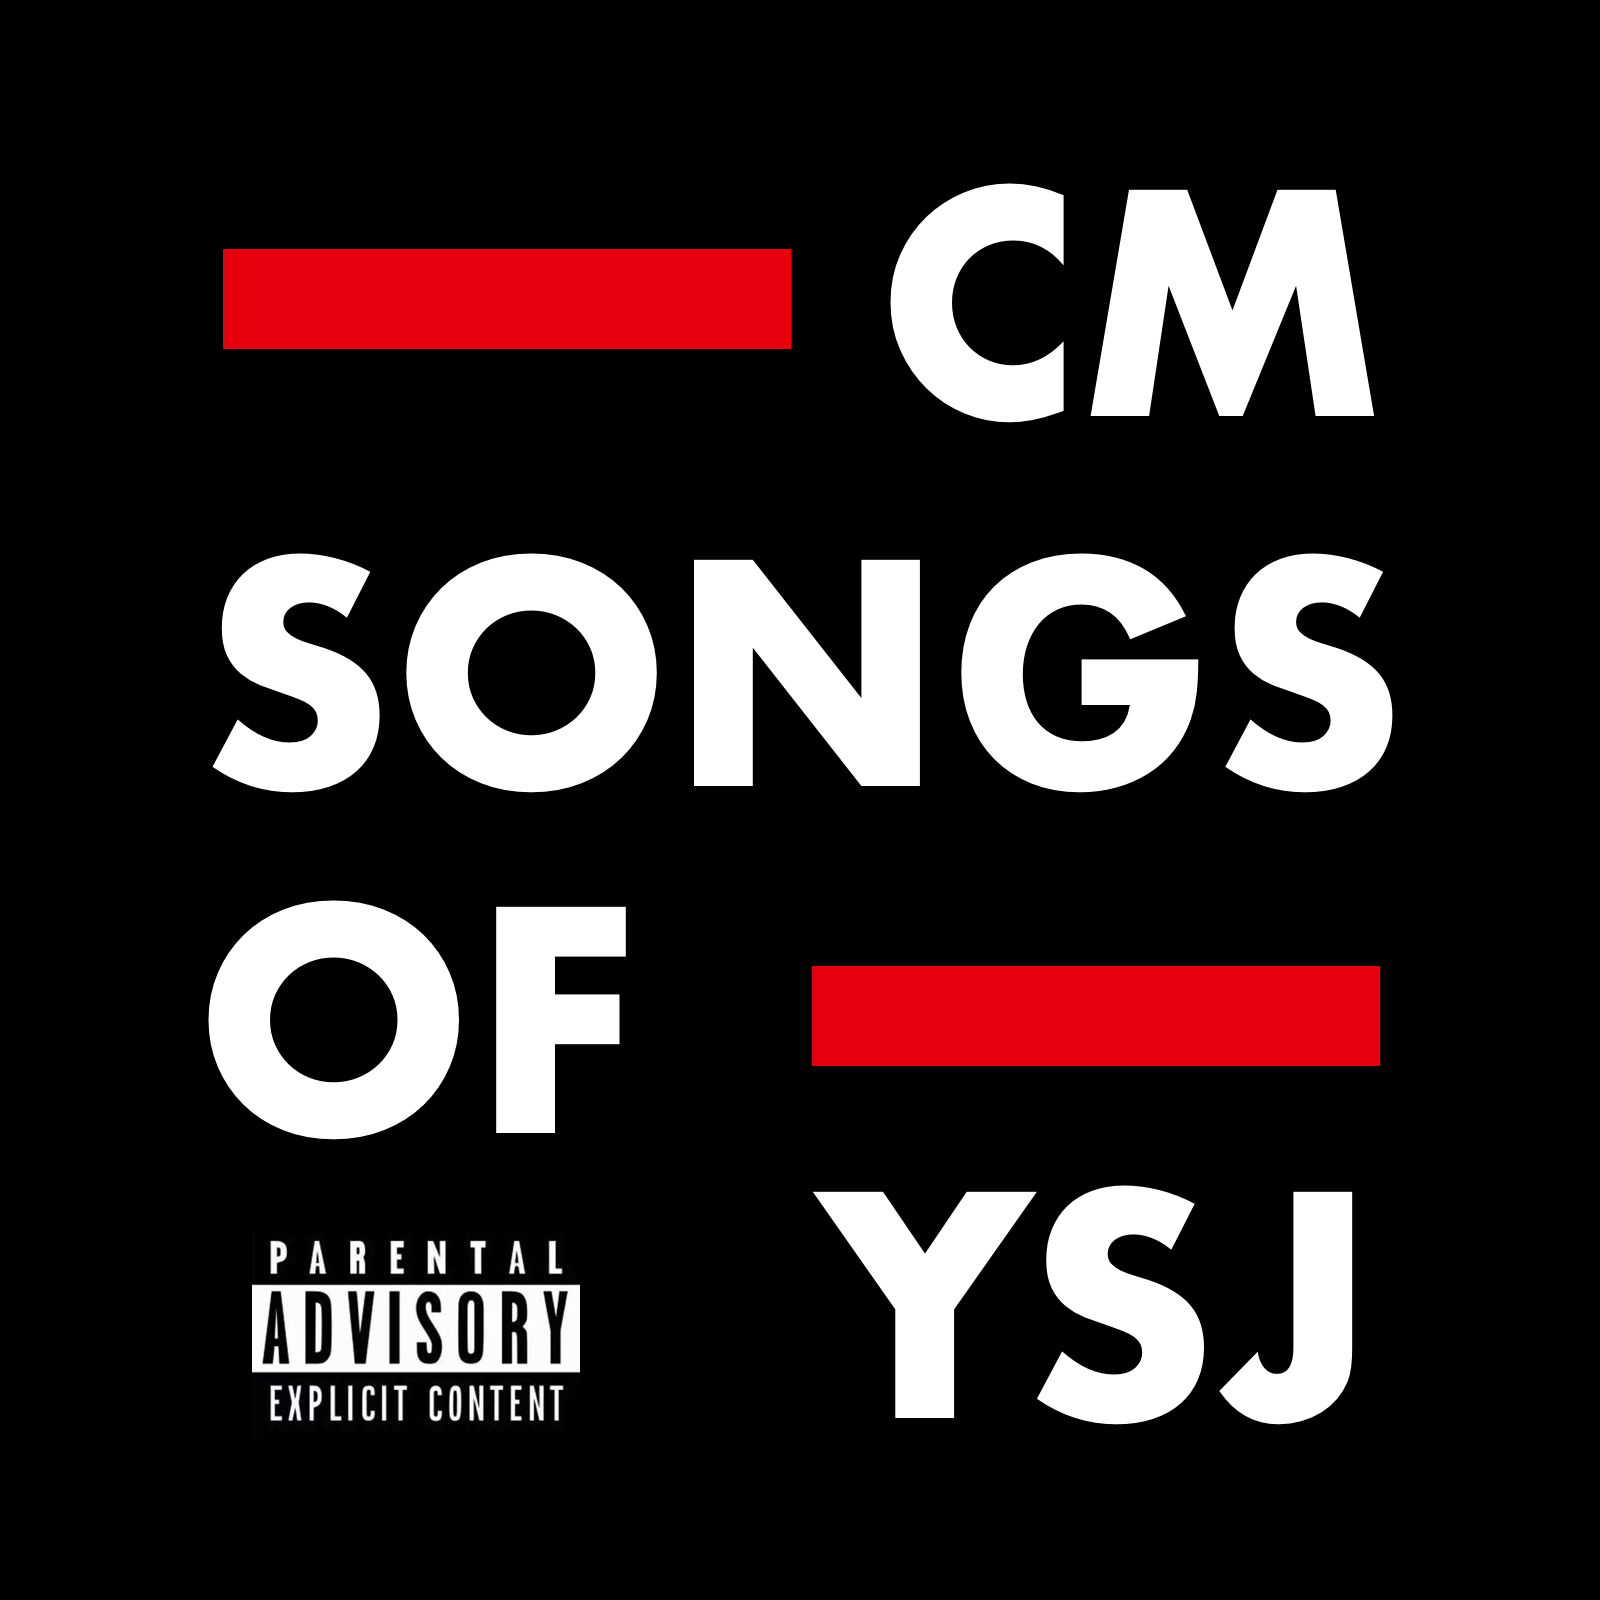 YSJ's CM SONGS